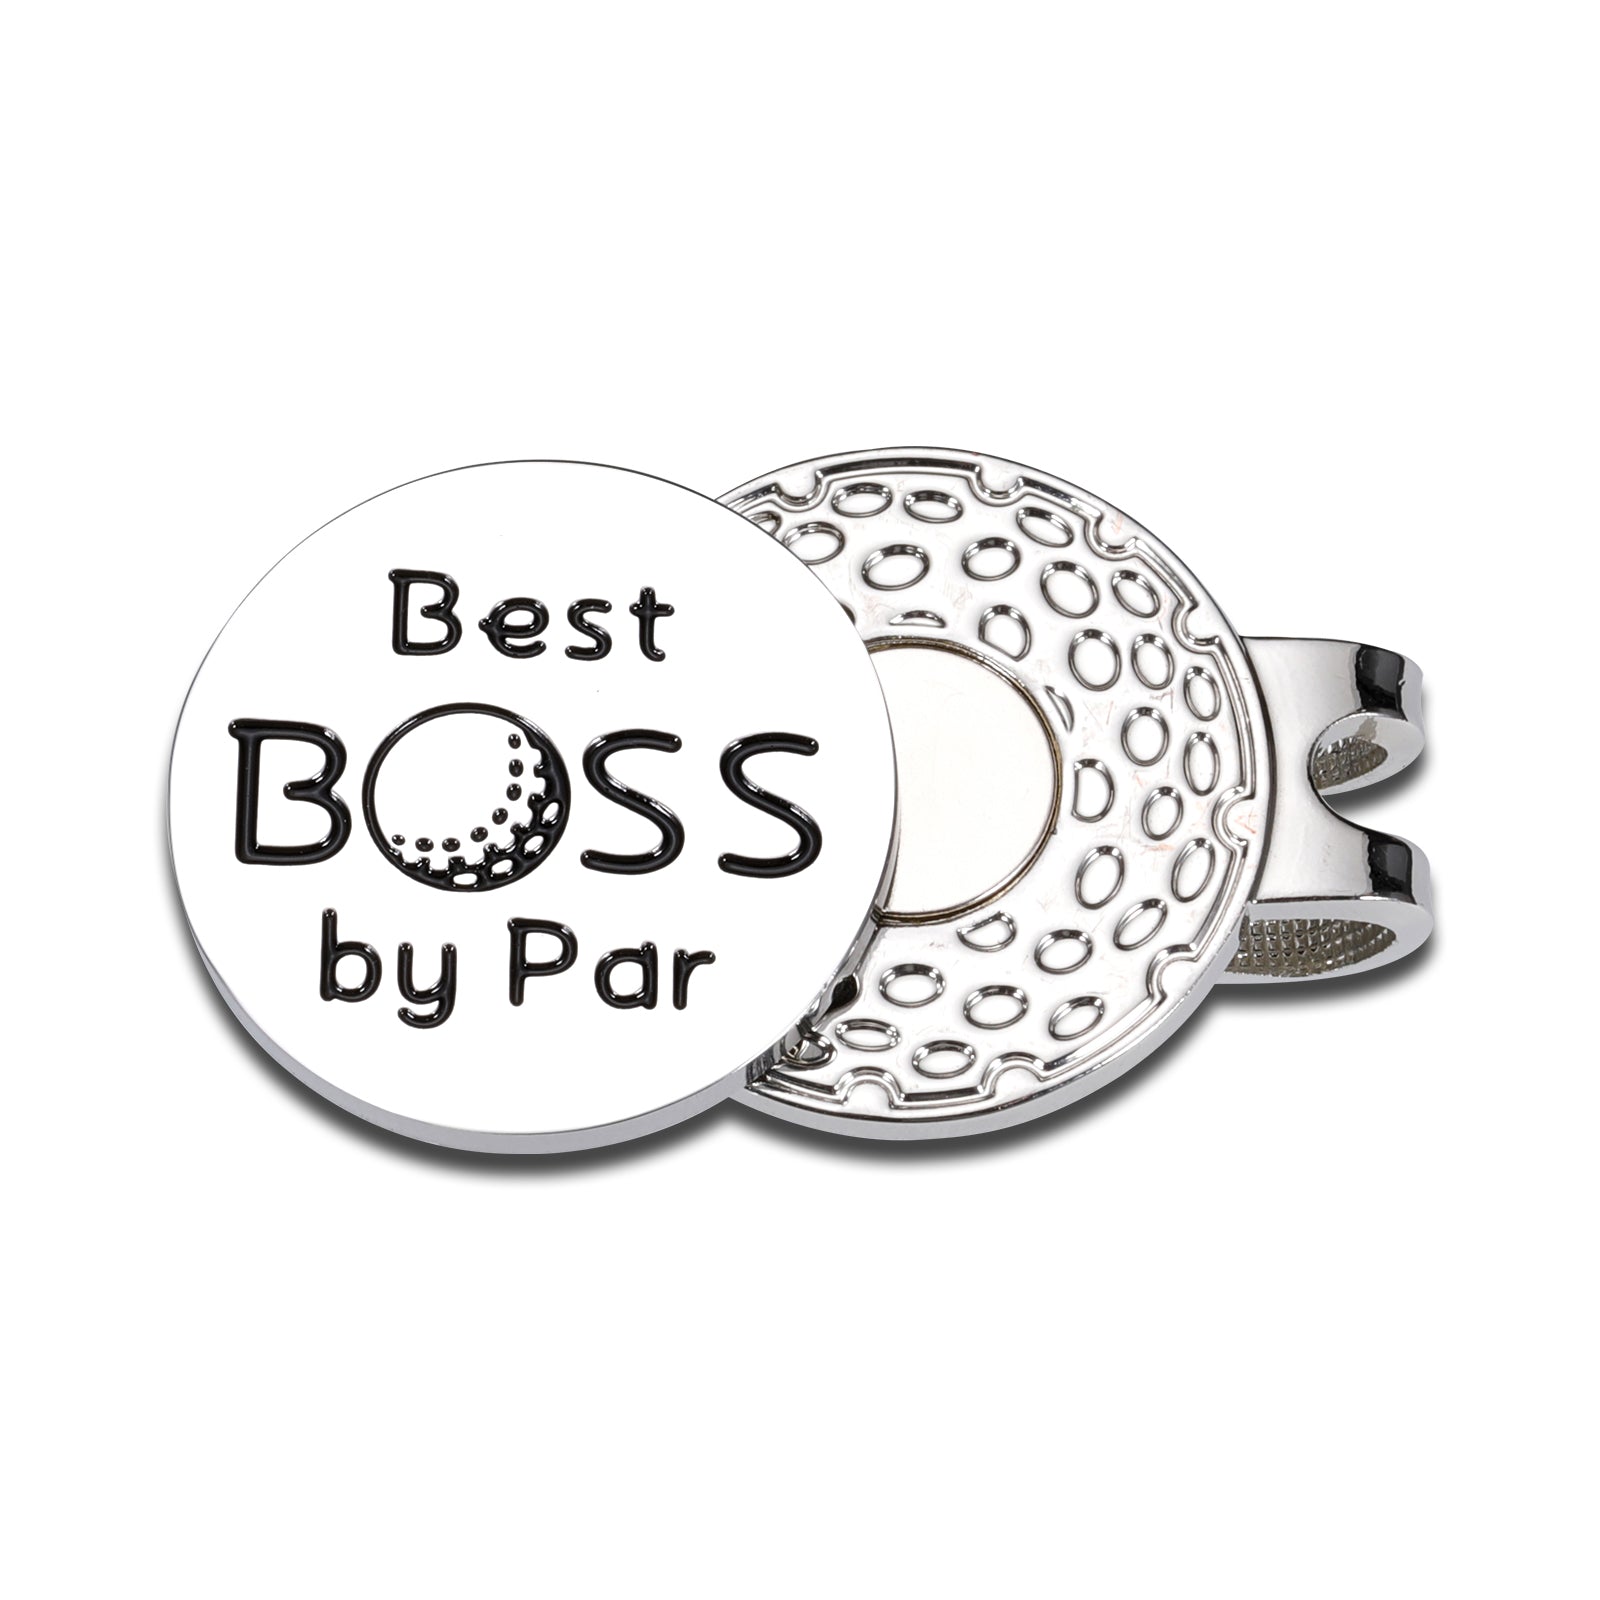 Worlds Best Boss Ever Mug - Best Boss Gifts, New Job Gifts, Good Luck Gifts,  Lea | eBay